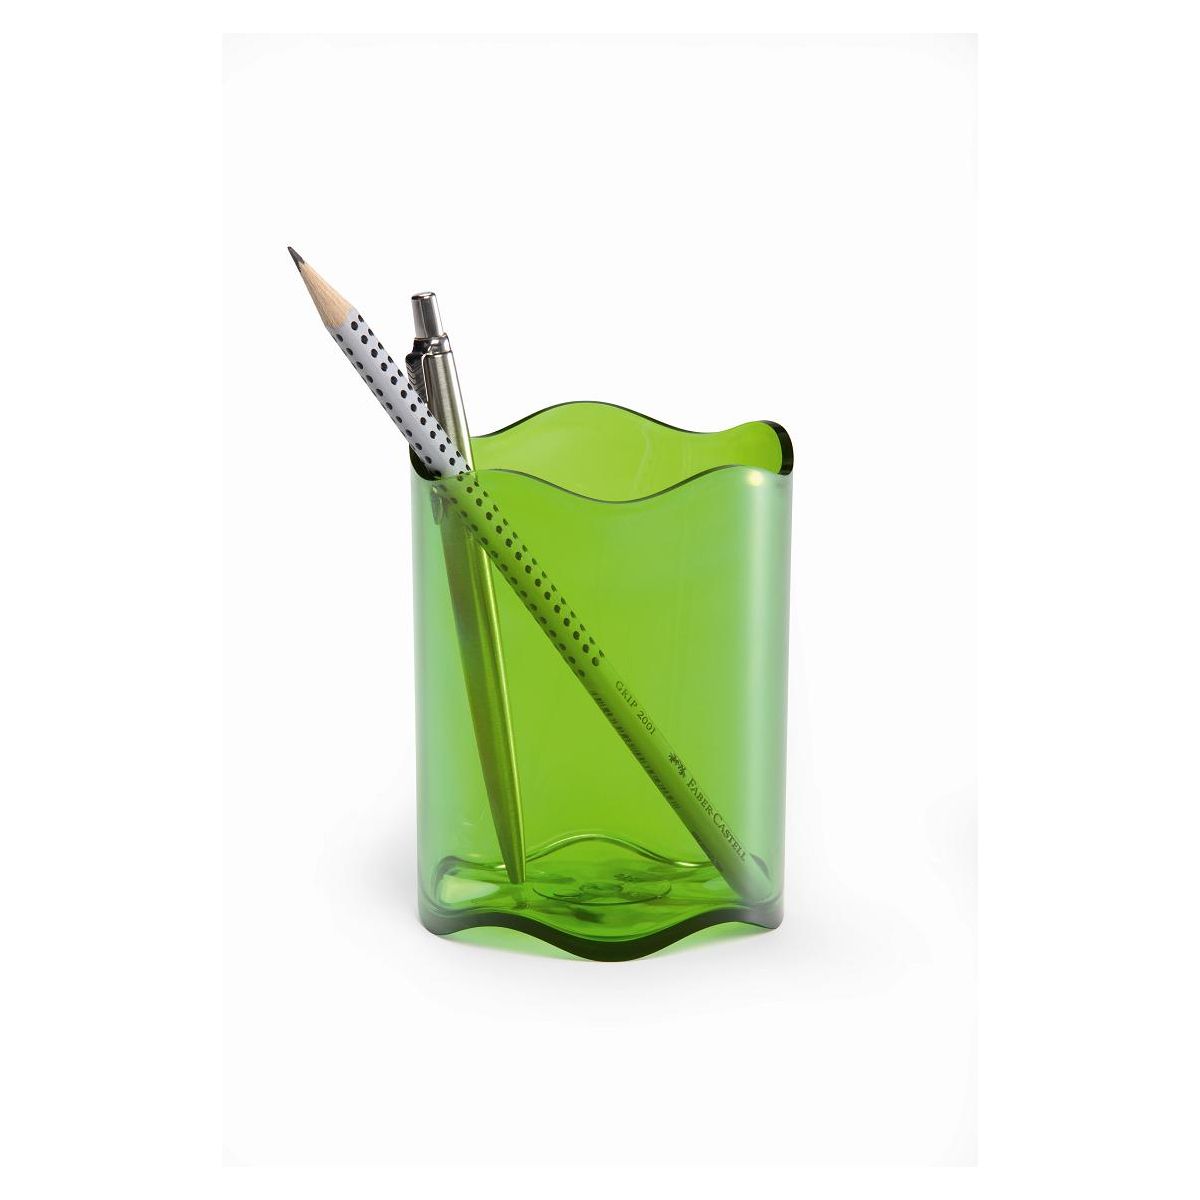 Pojemnik na długopisy Trend zielony polistyren PS Durable (1701235017)